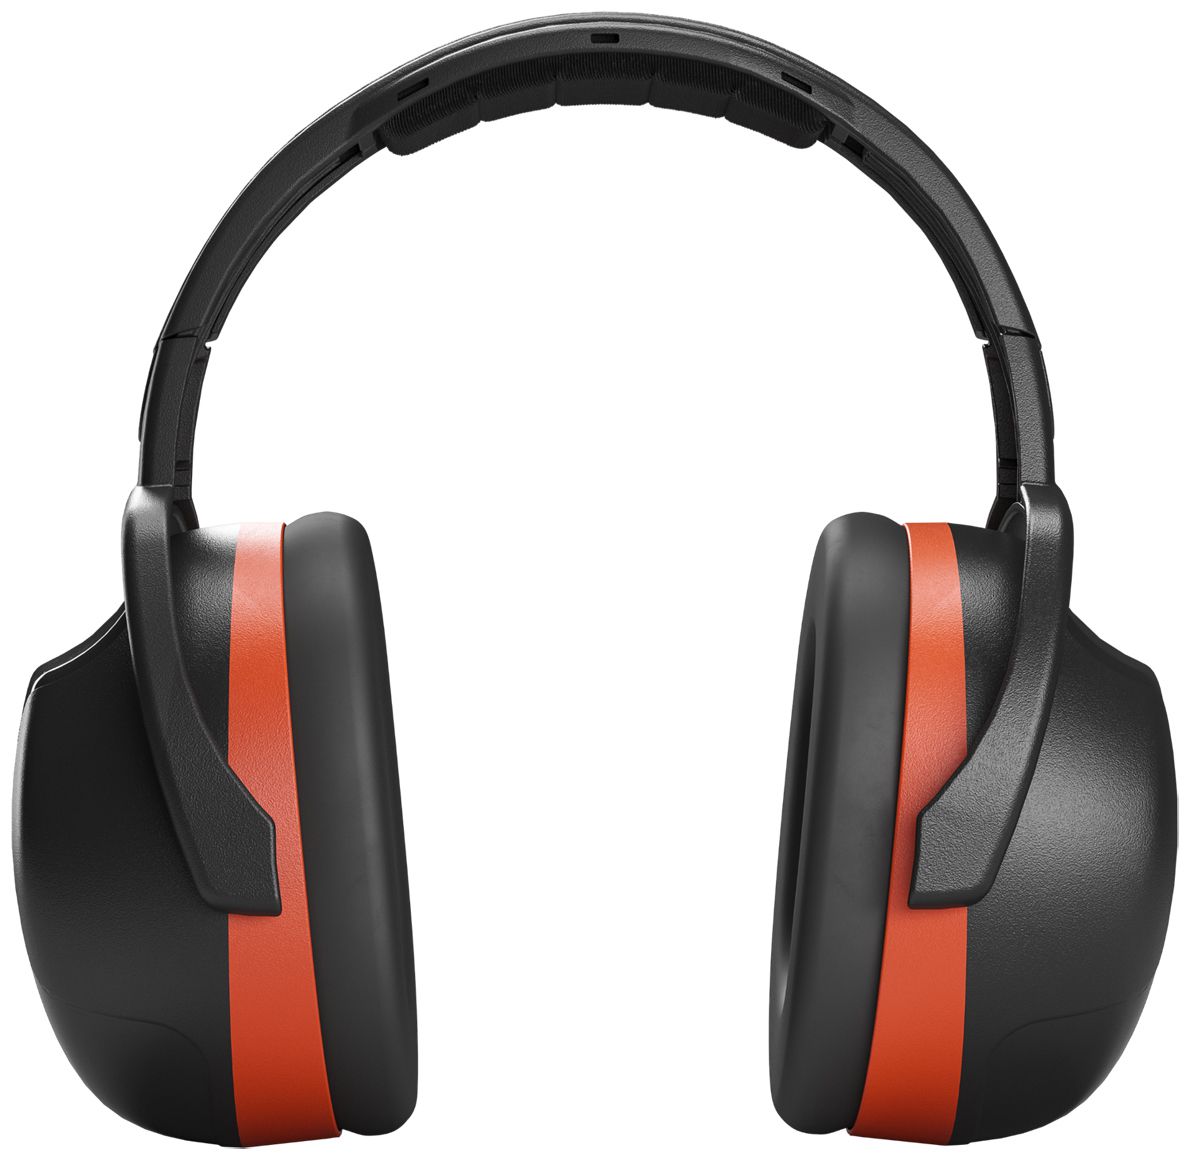 Hellberg Secure Kapselgehörschutz - Gehörschutz mit SNR 33 dB - EN 352-1 - Passiver Kapselgehörschützer - Orange/Schwarz